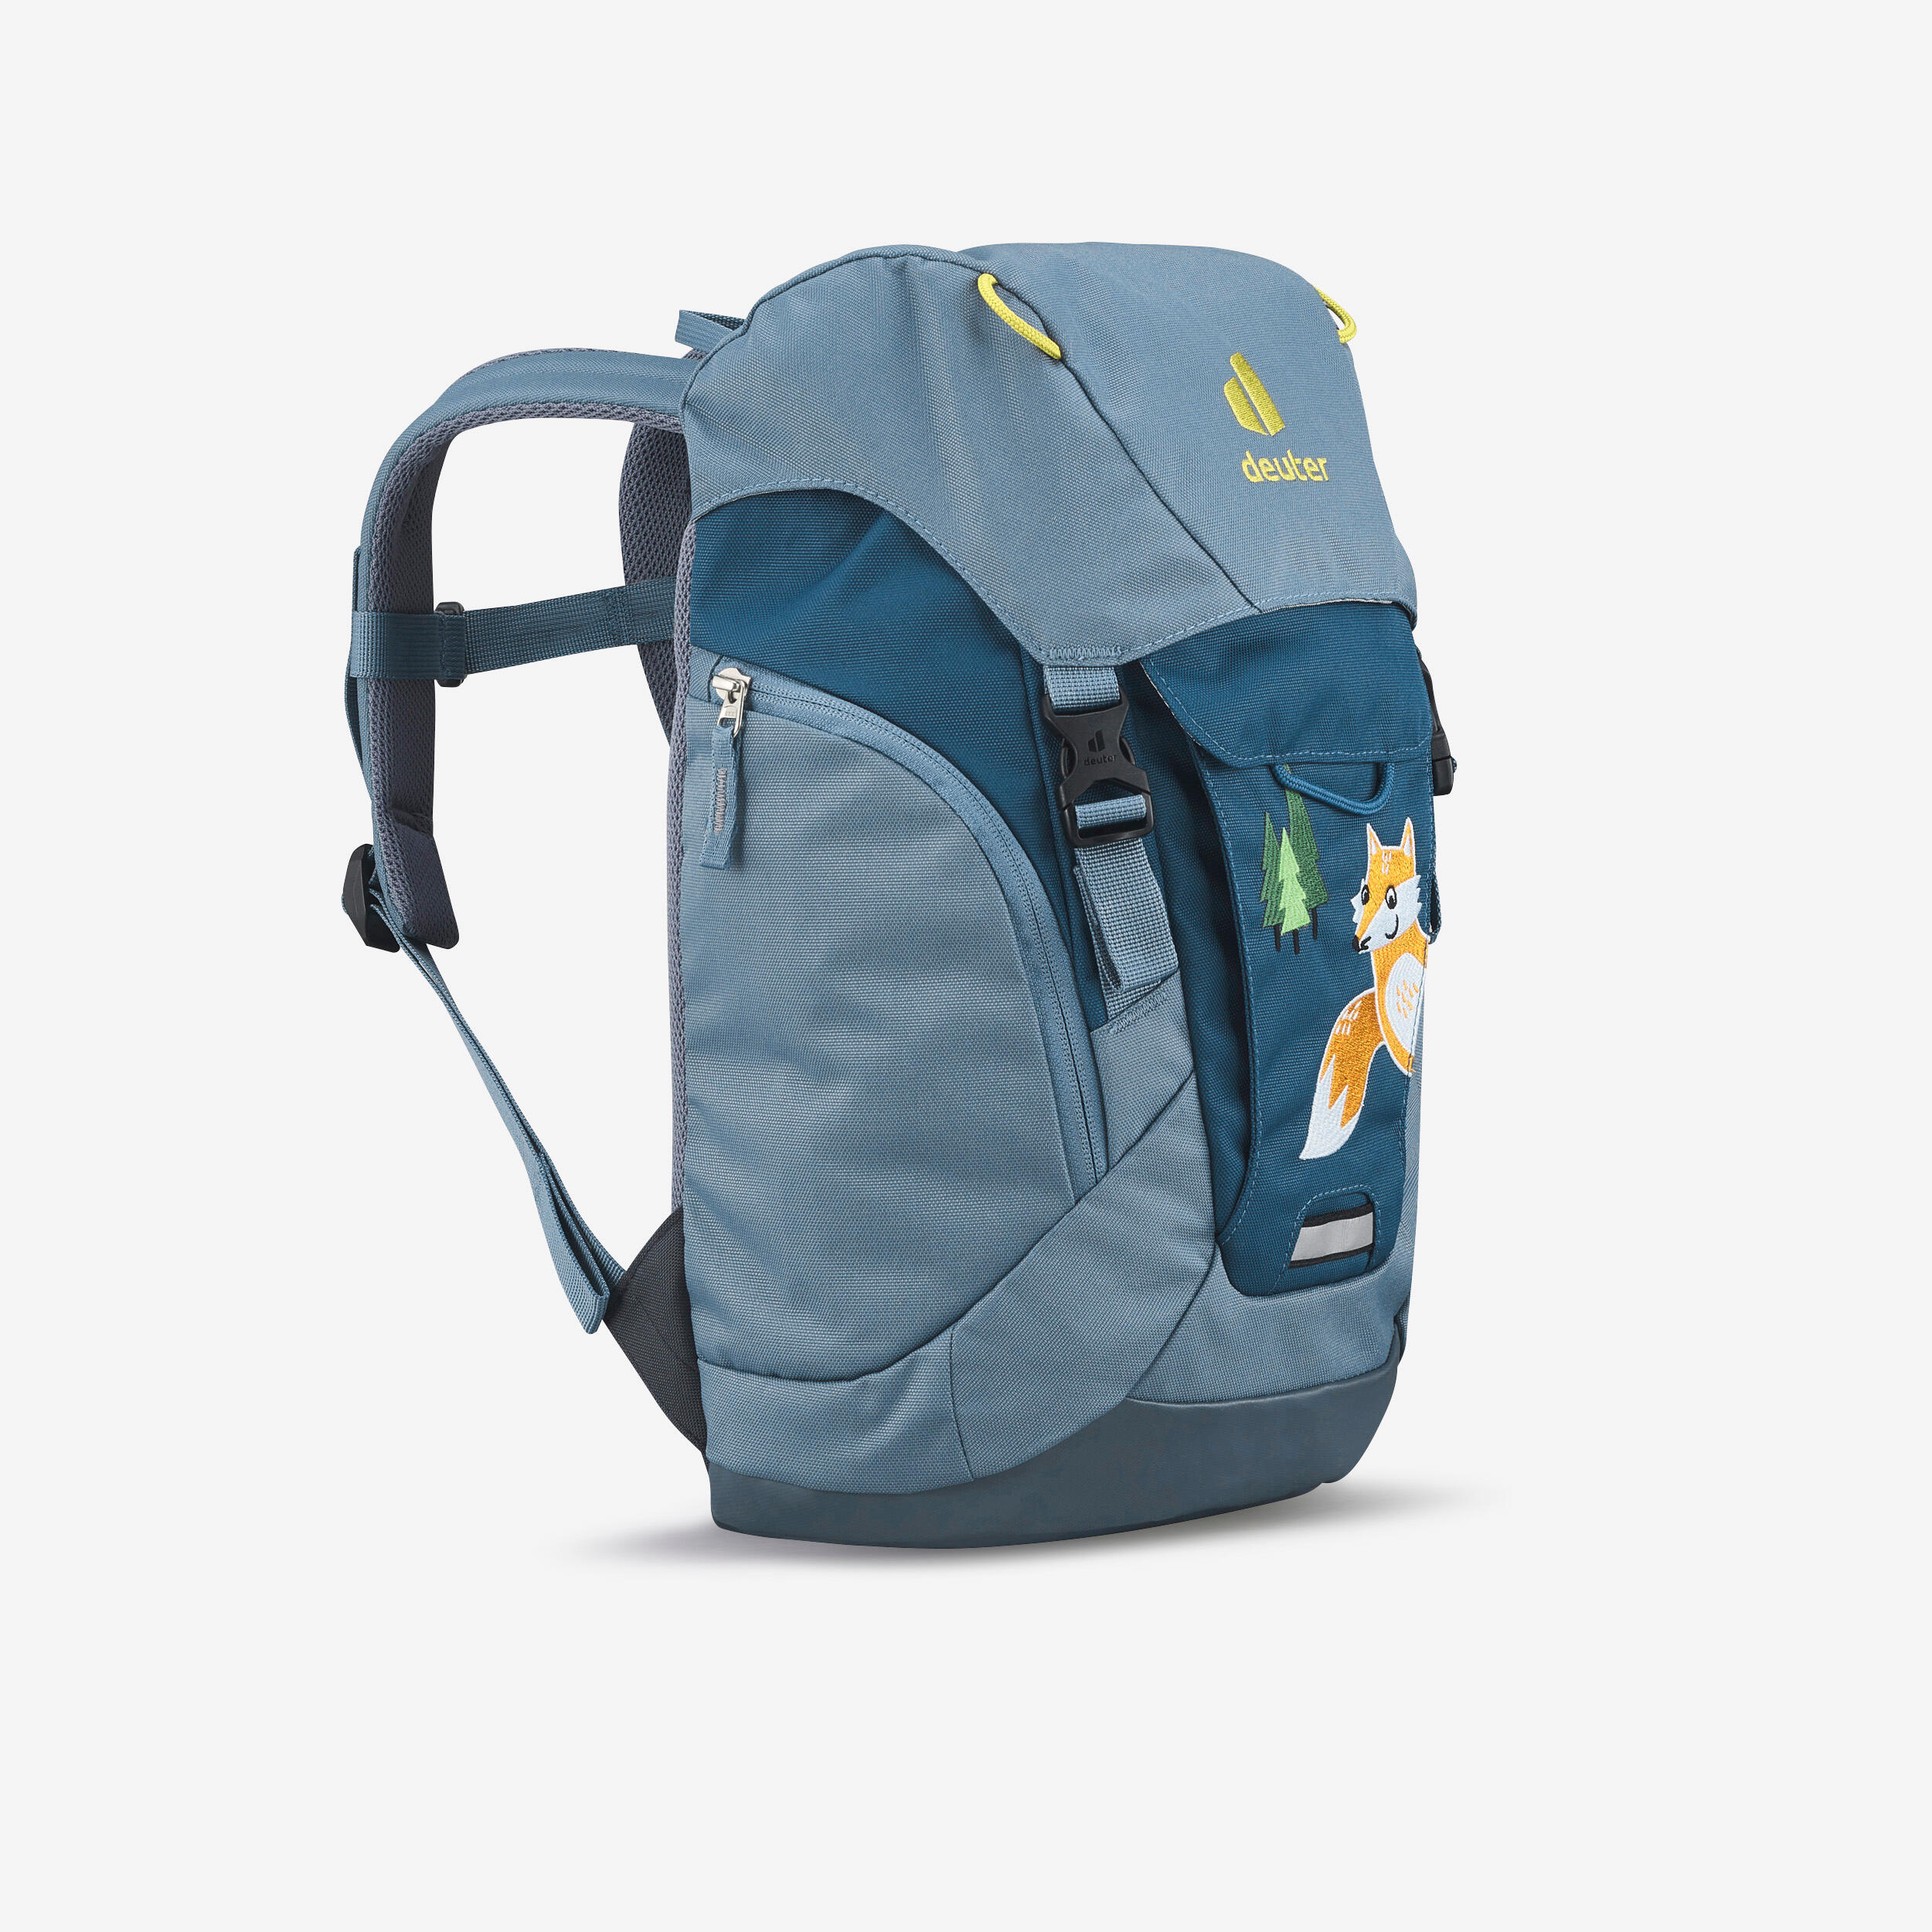 Kids School Bags and Backpacks